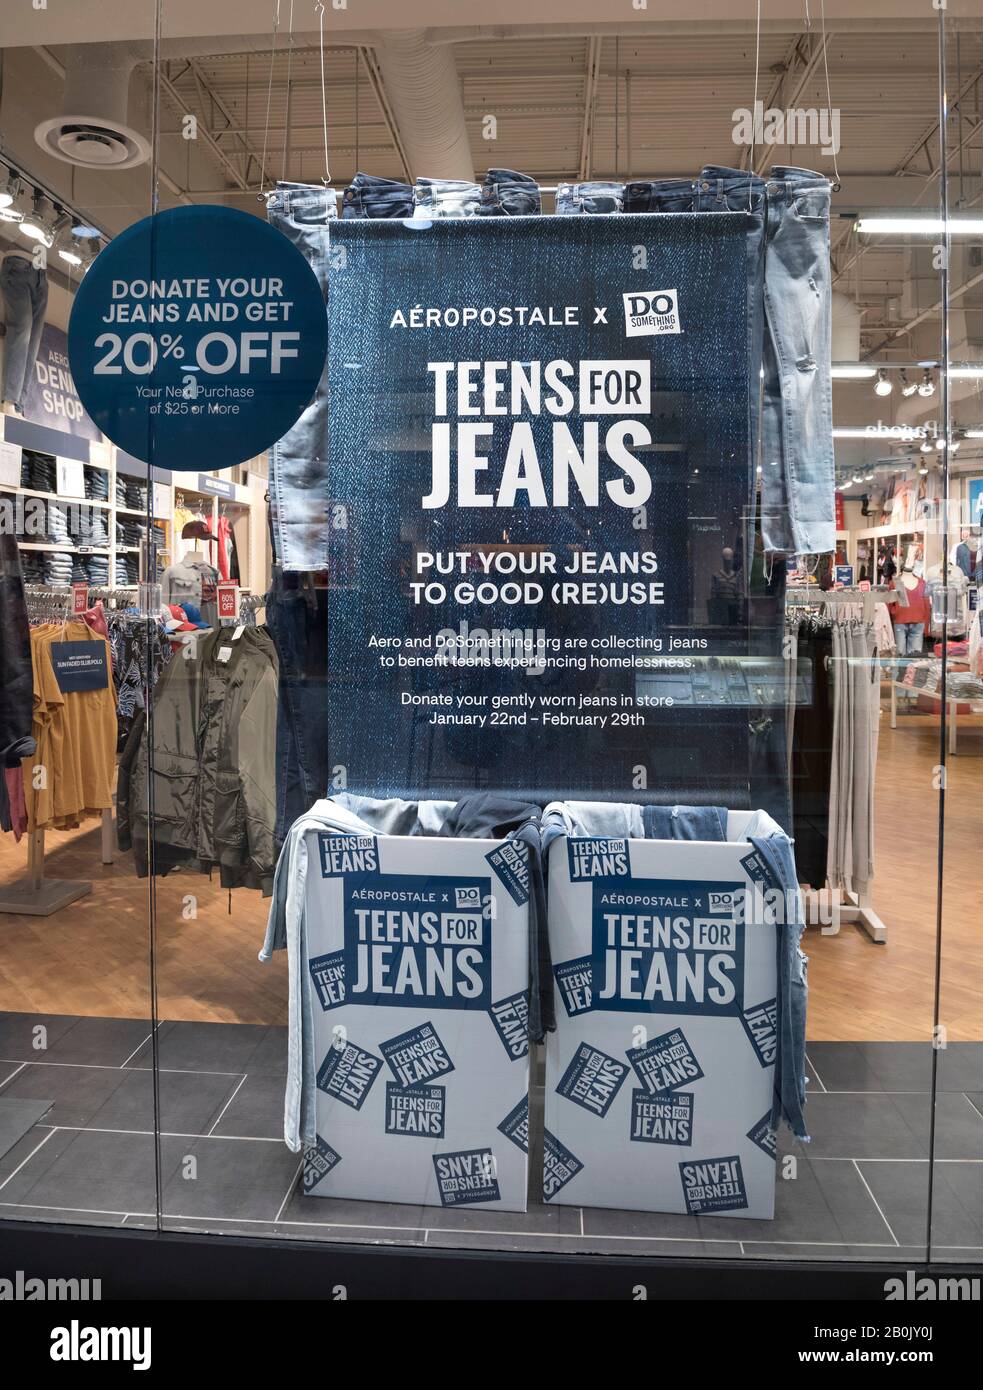 Adolescenti Per Jeans da negozio di abbigliamento Aeropostale sta raccogliendo jeans leggermente indossati per distribuire e aiutare gli adolescenti senza casa. Foto Stock